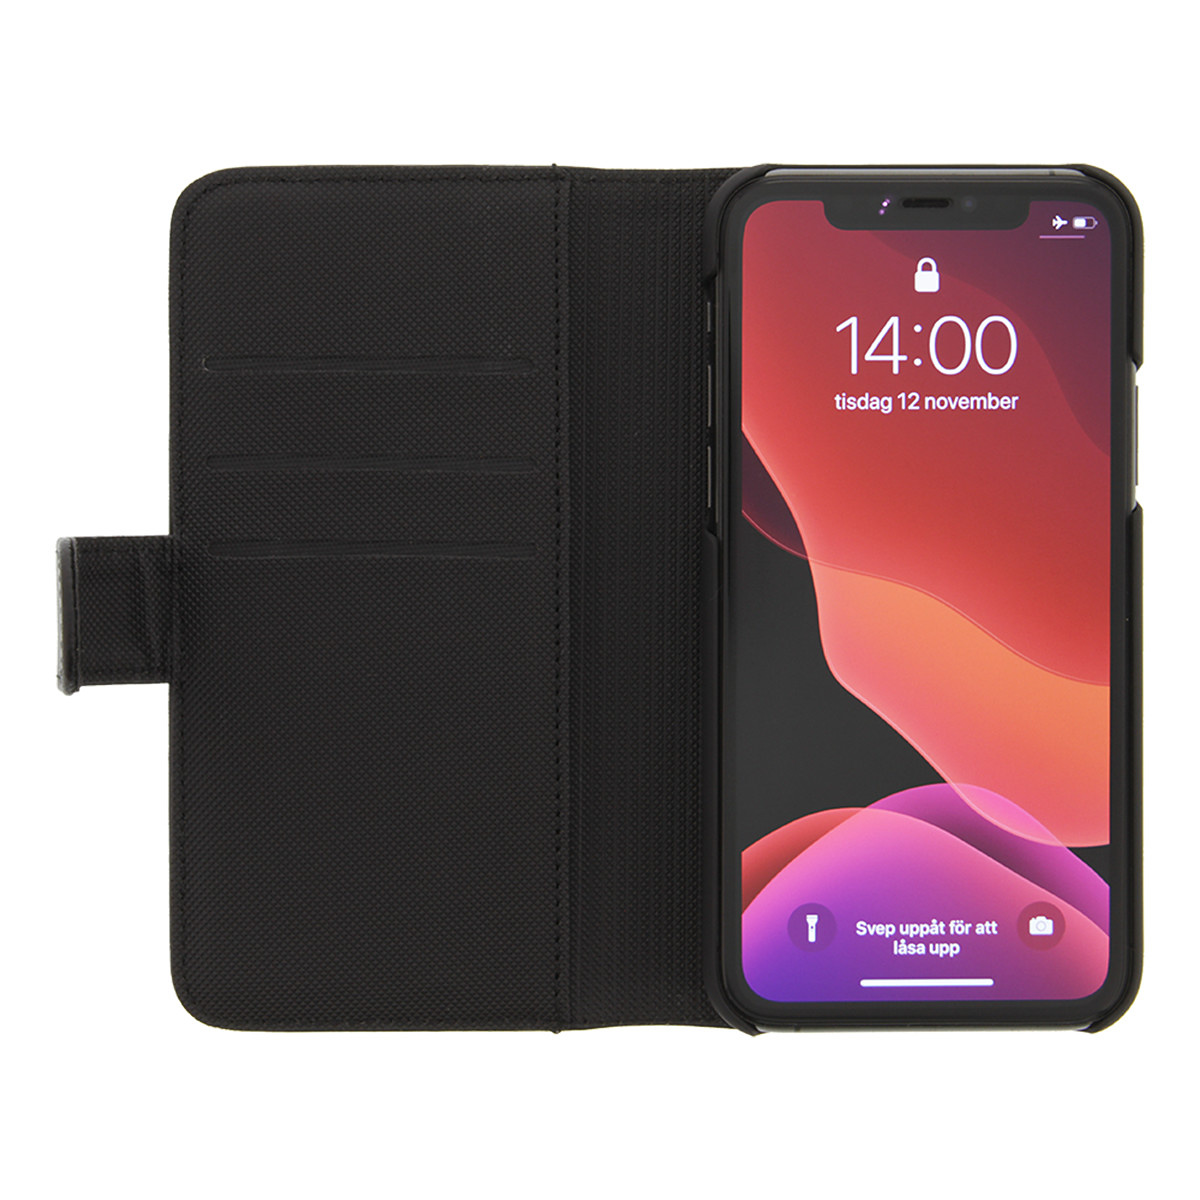 DELTACO plånboksfodral med löstagbar baksida till iPhone 11